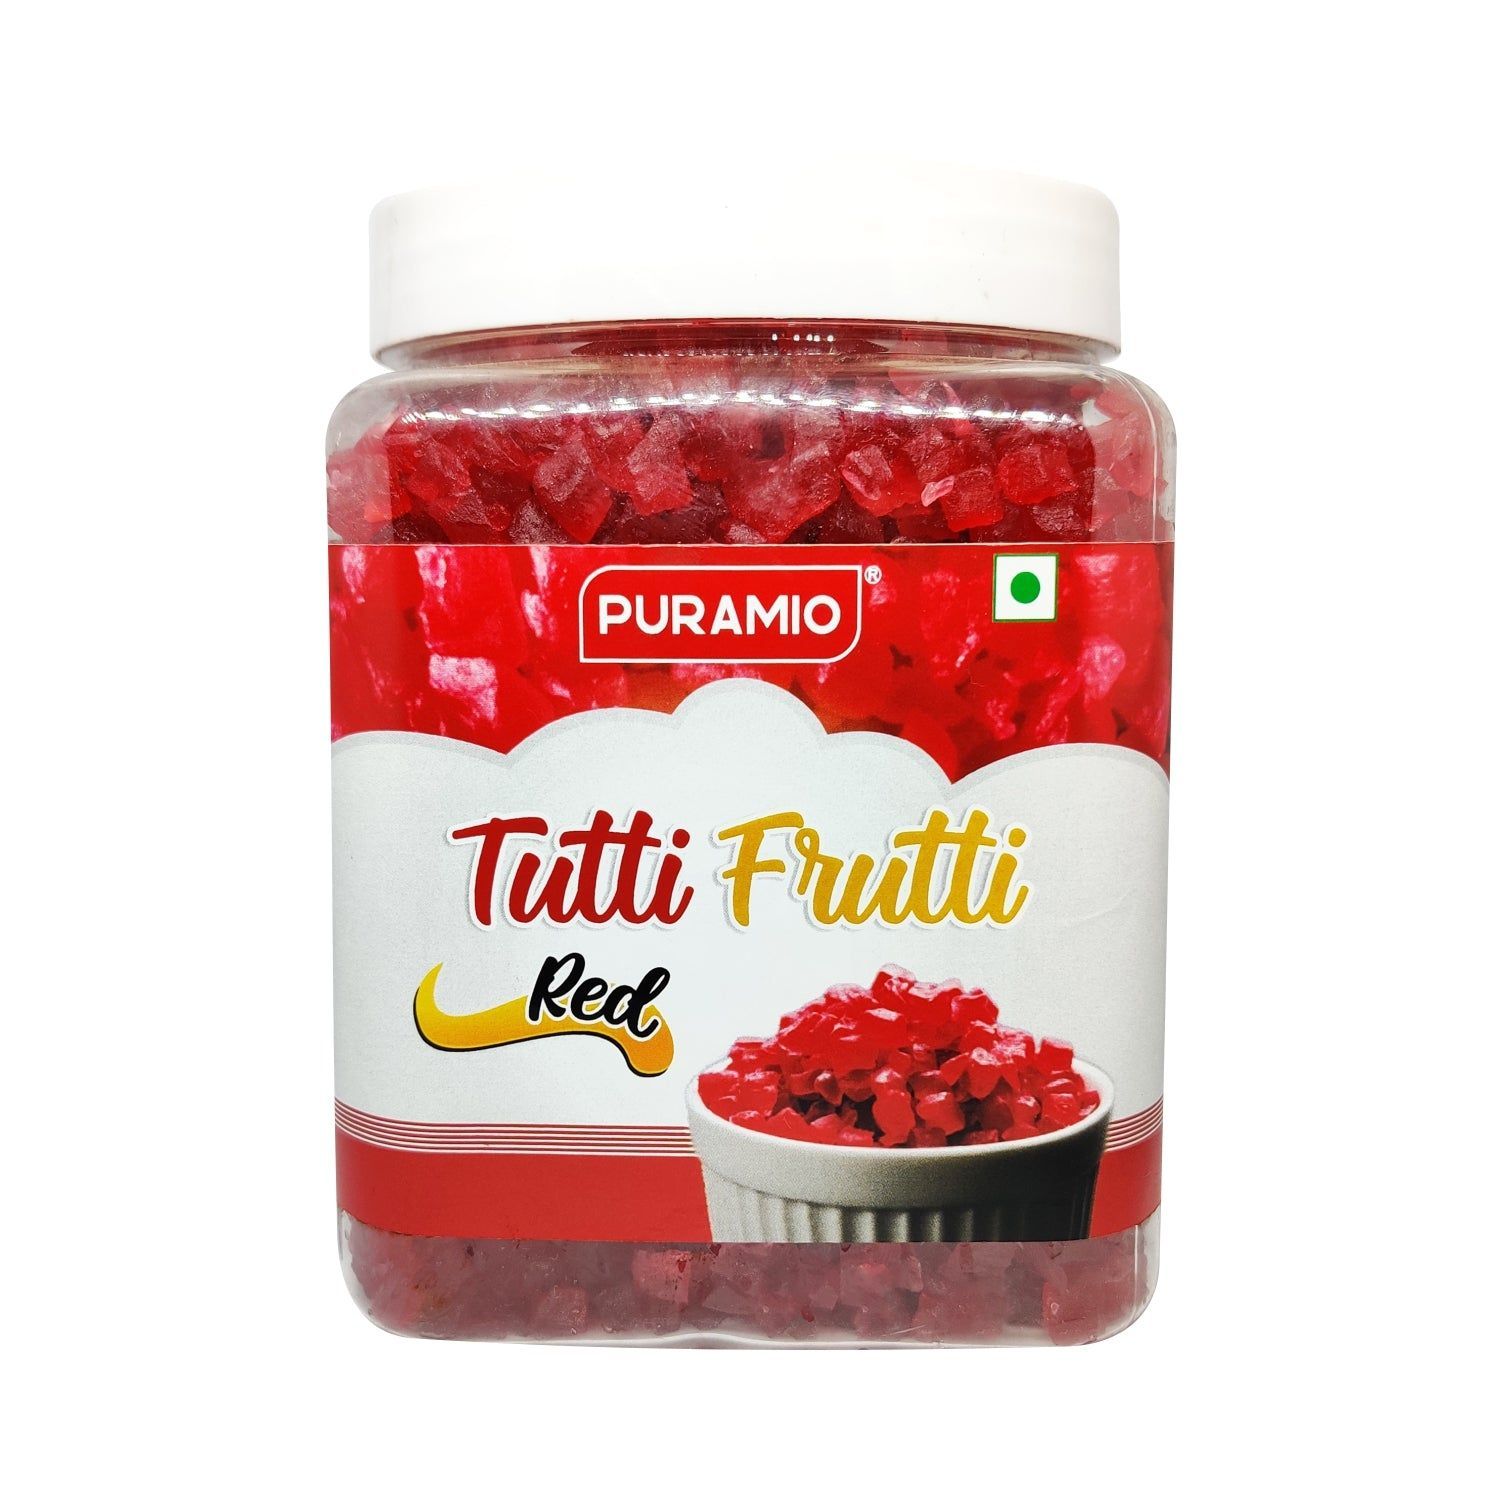 Puramio Tutti Frutti - Red, 800 gm